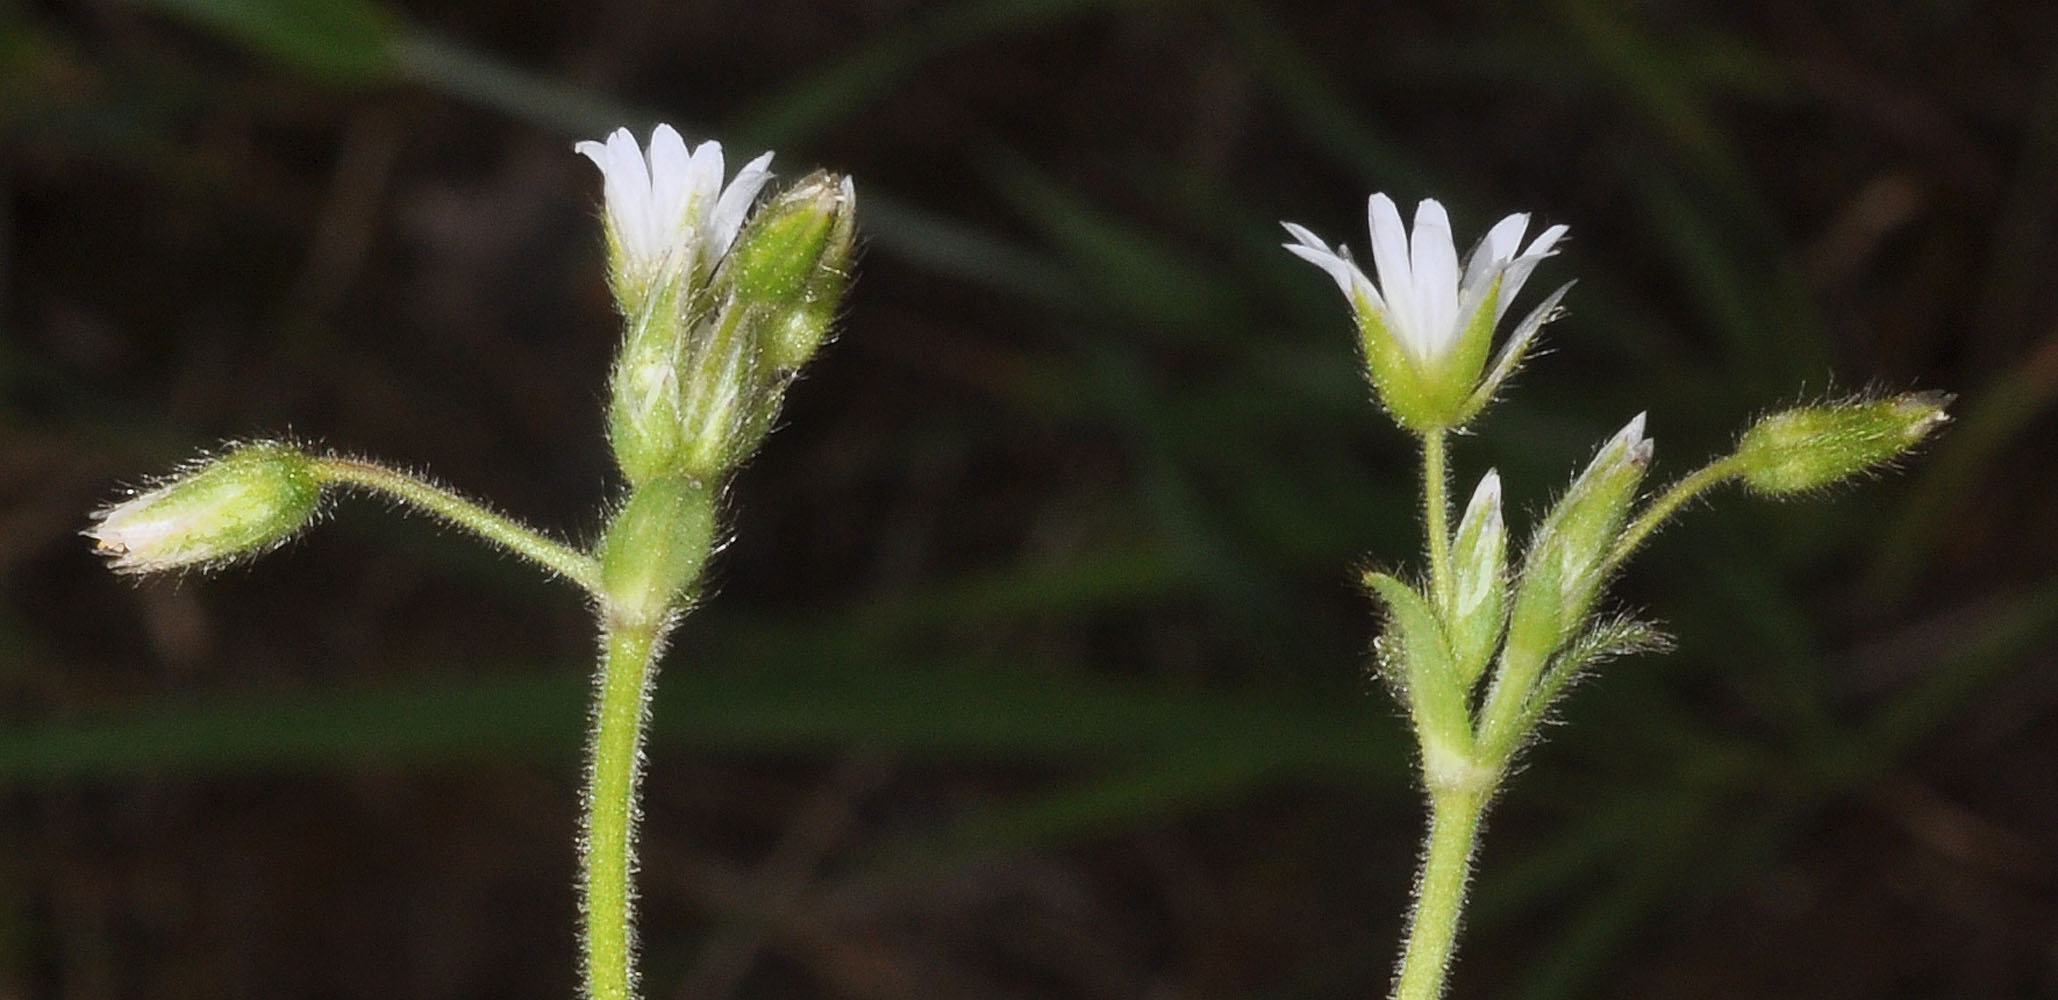 Flora of Eastern Washington Image: Cerastium nutans